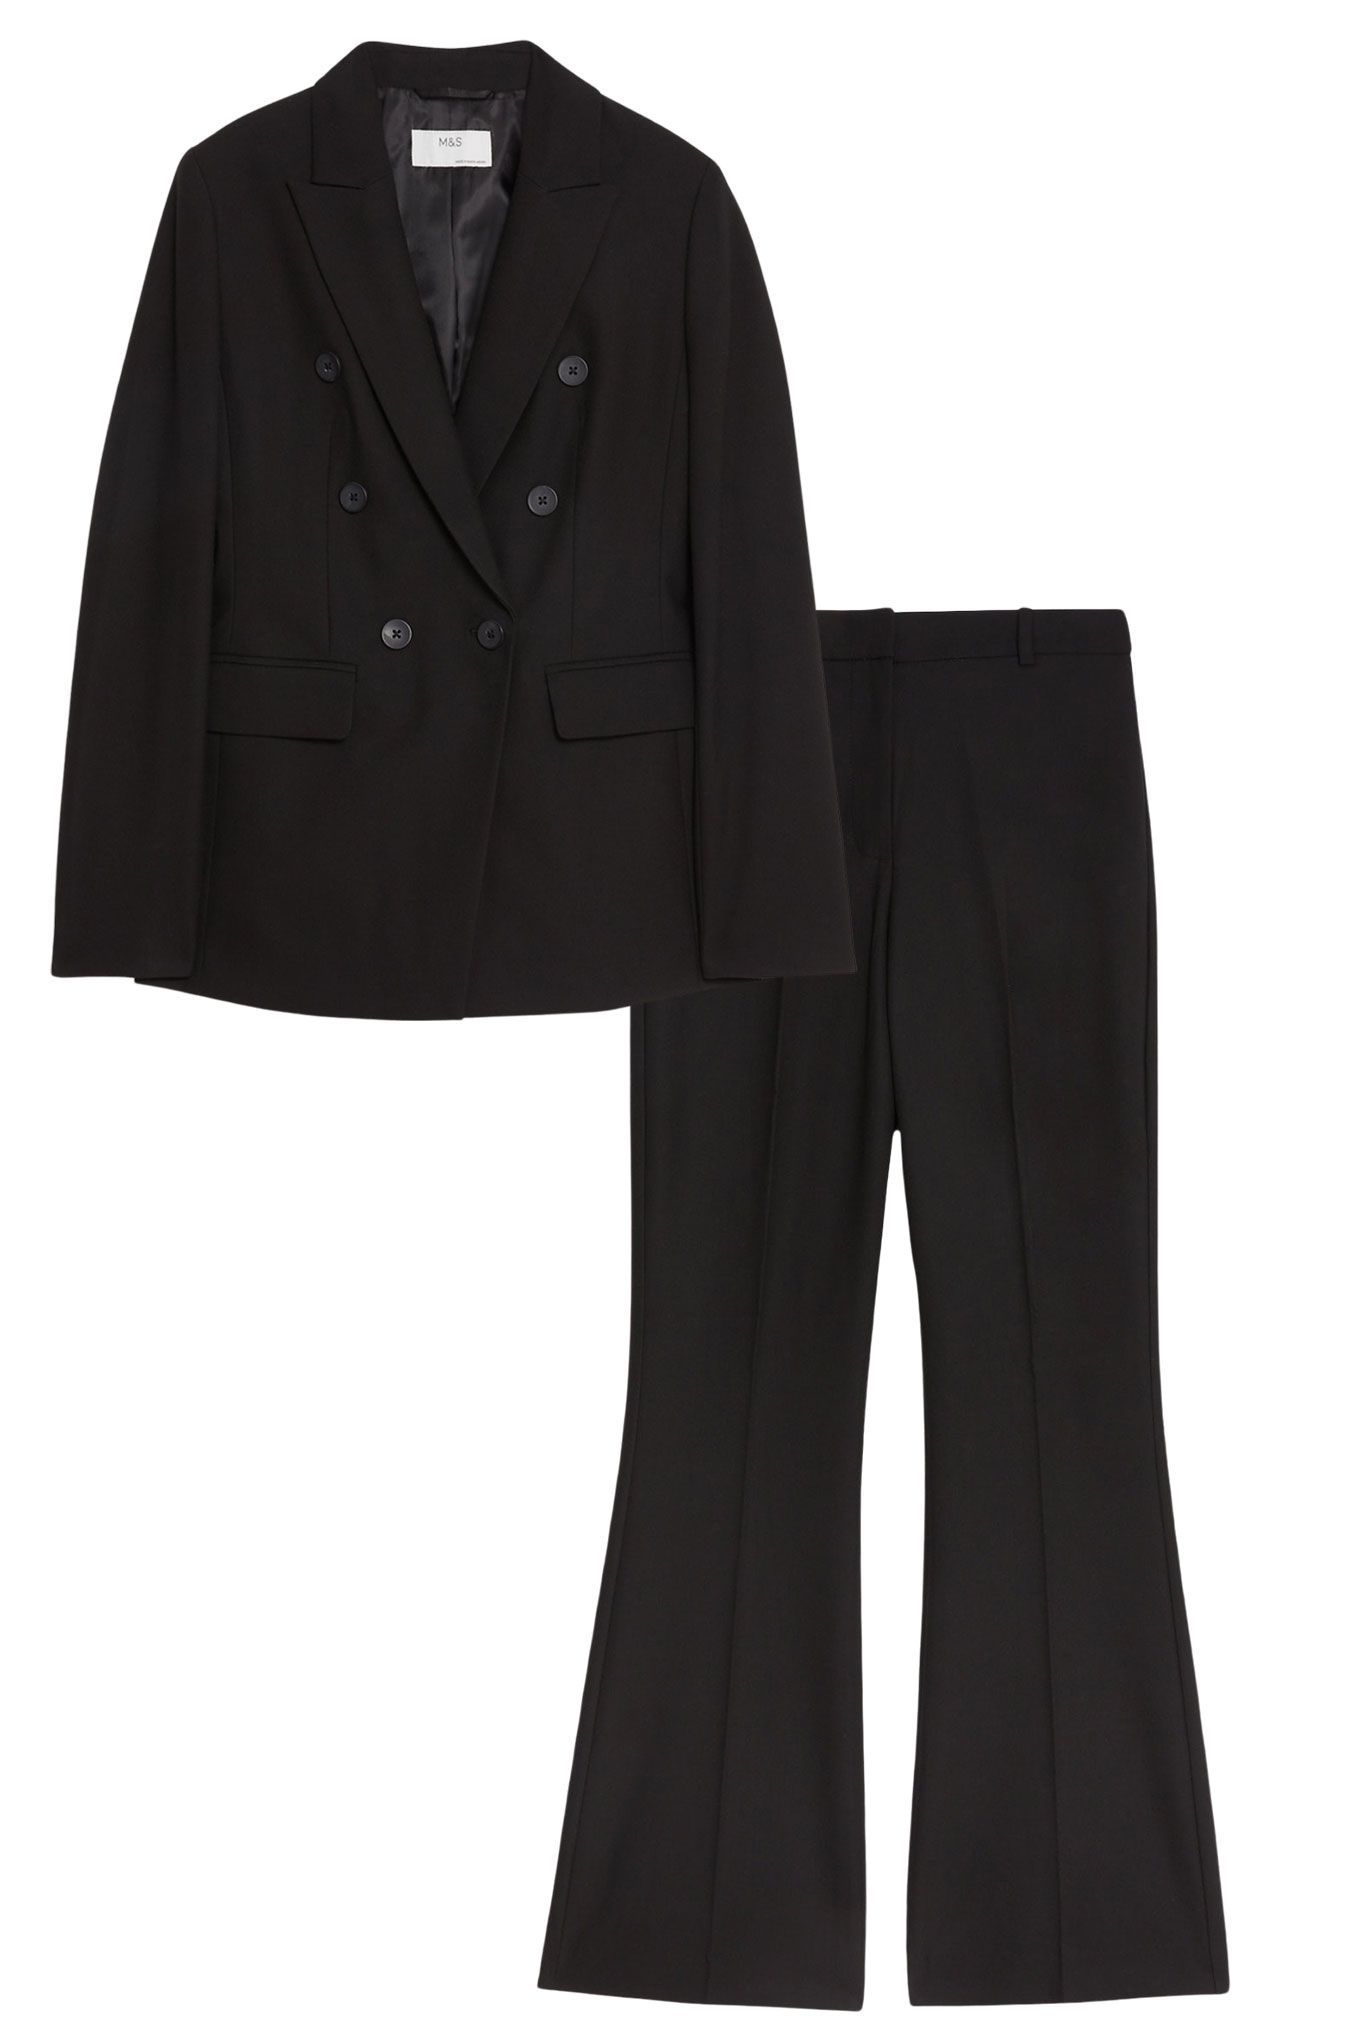 Ladies trouser suit: 14 best women's trouser suits